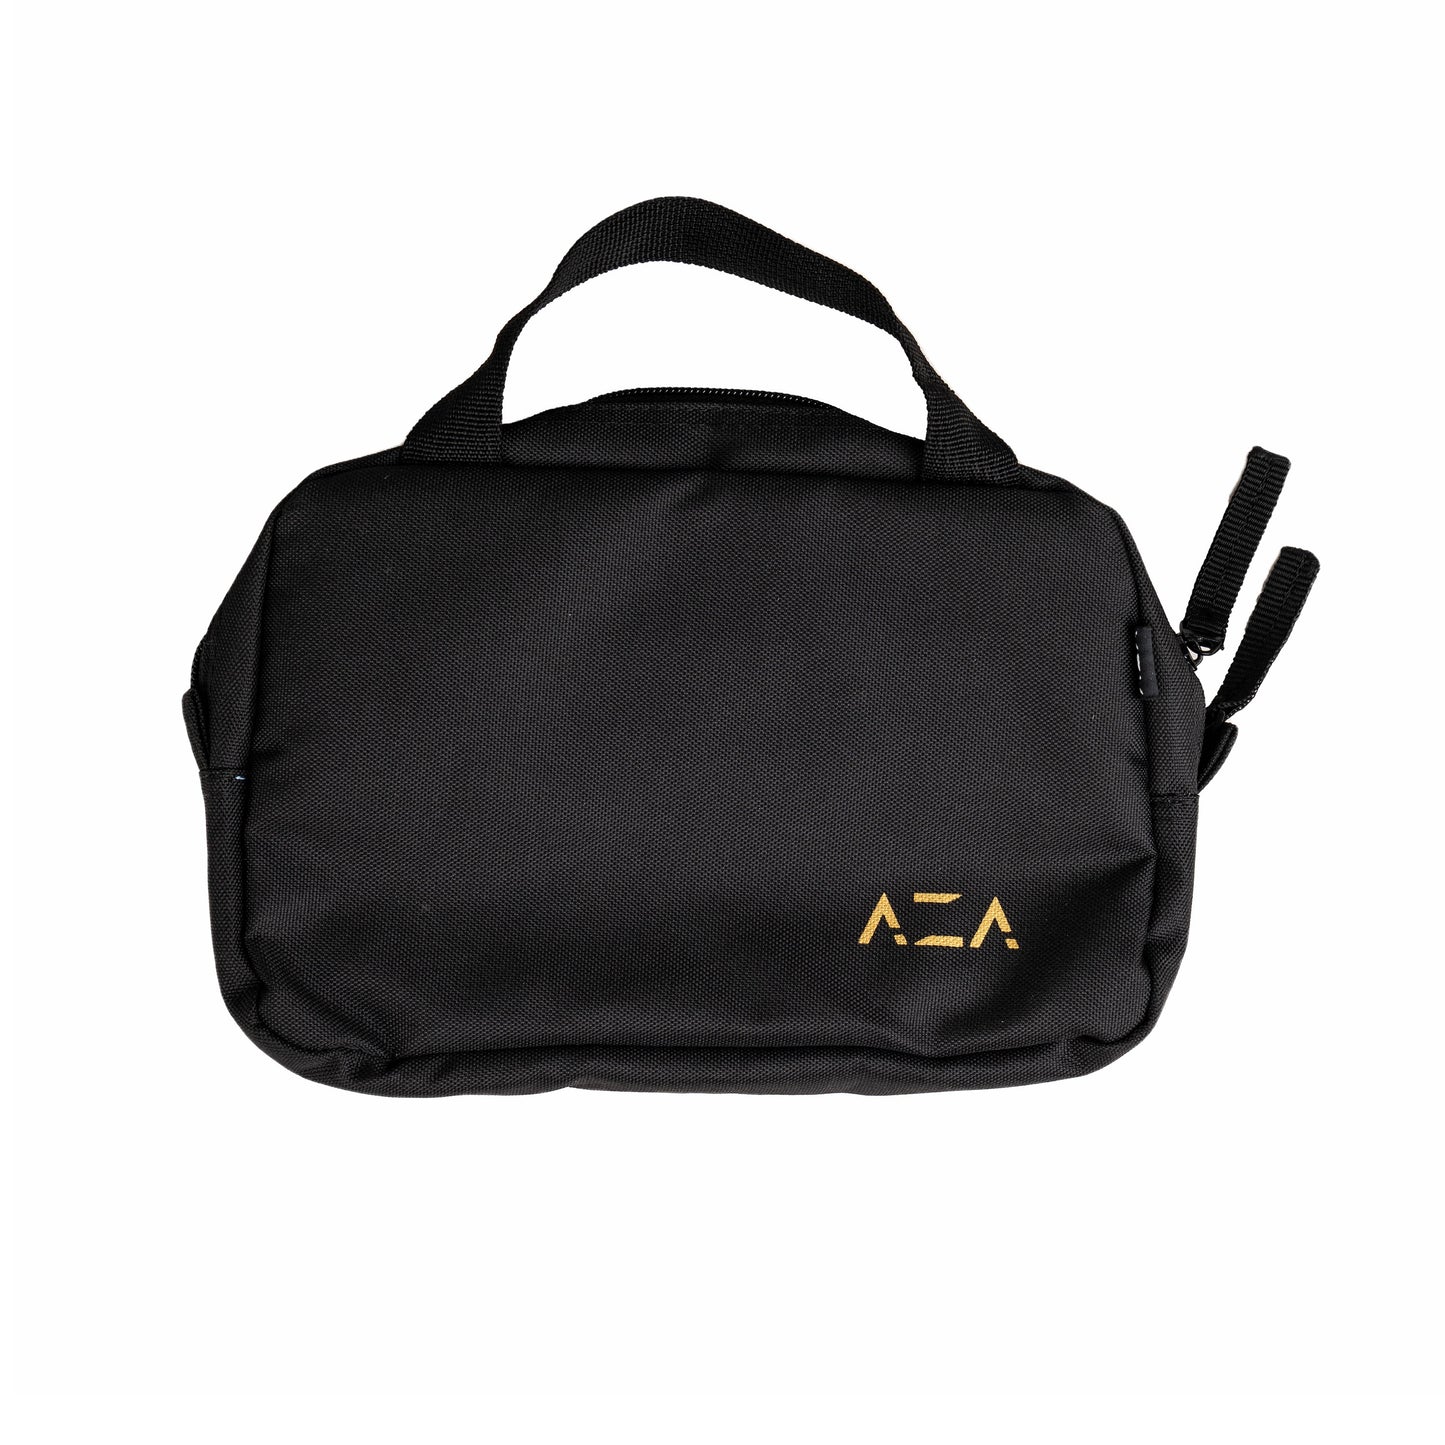 AZA Handbag Dark Series - Black / Gold